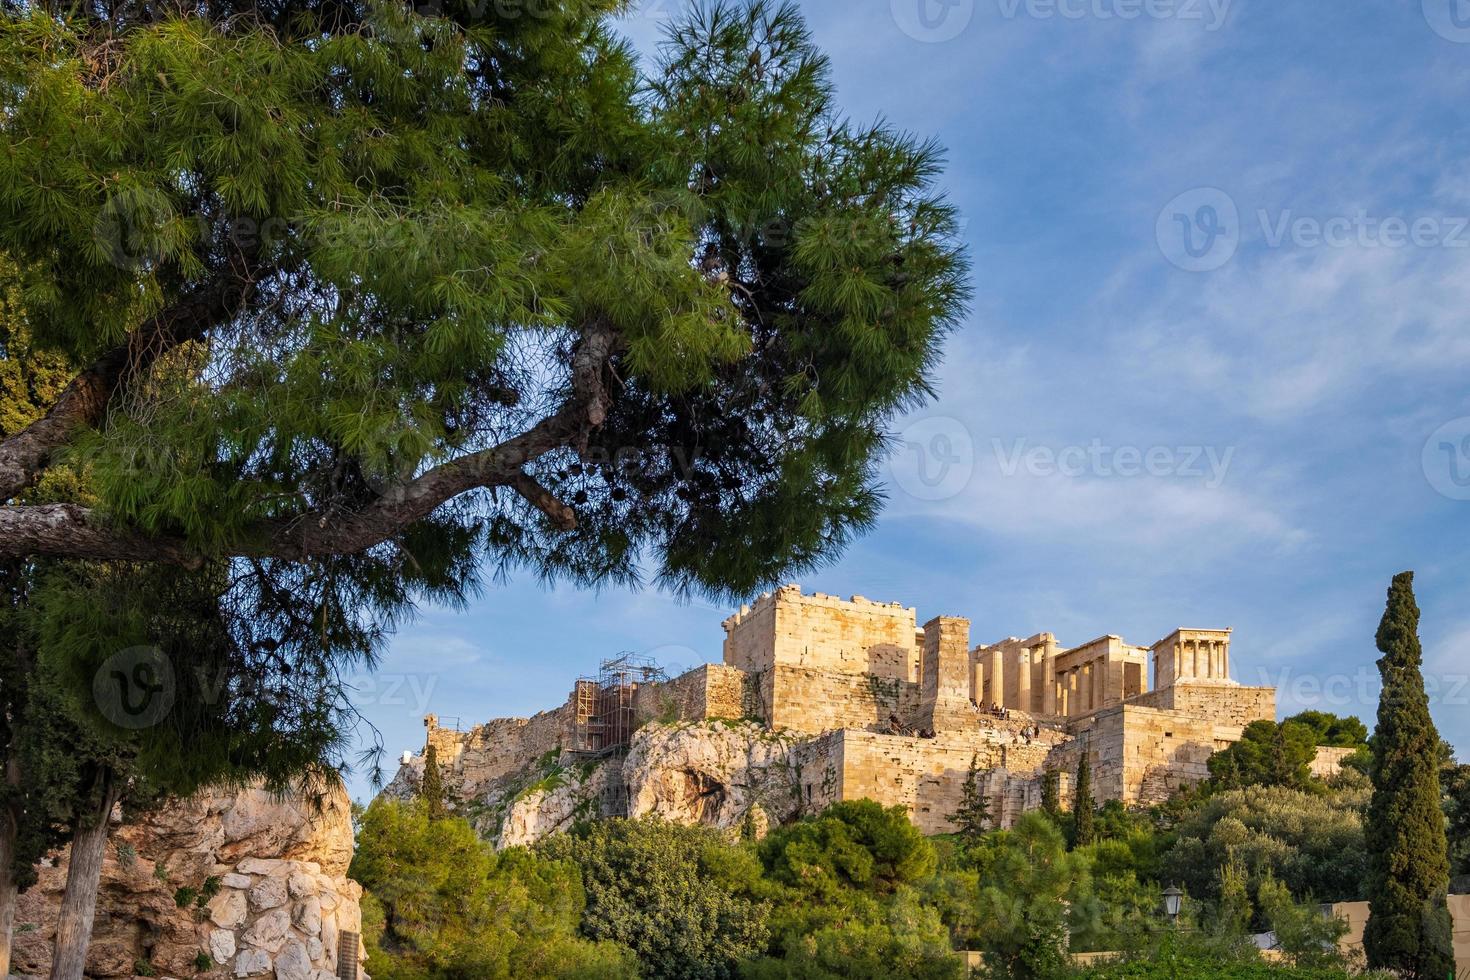 Vue de l'acropole d'Athènes en Grèce à partir d'une colline rocheuse à travers le rocher de l'acropole photo